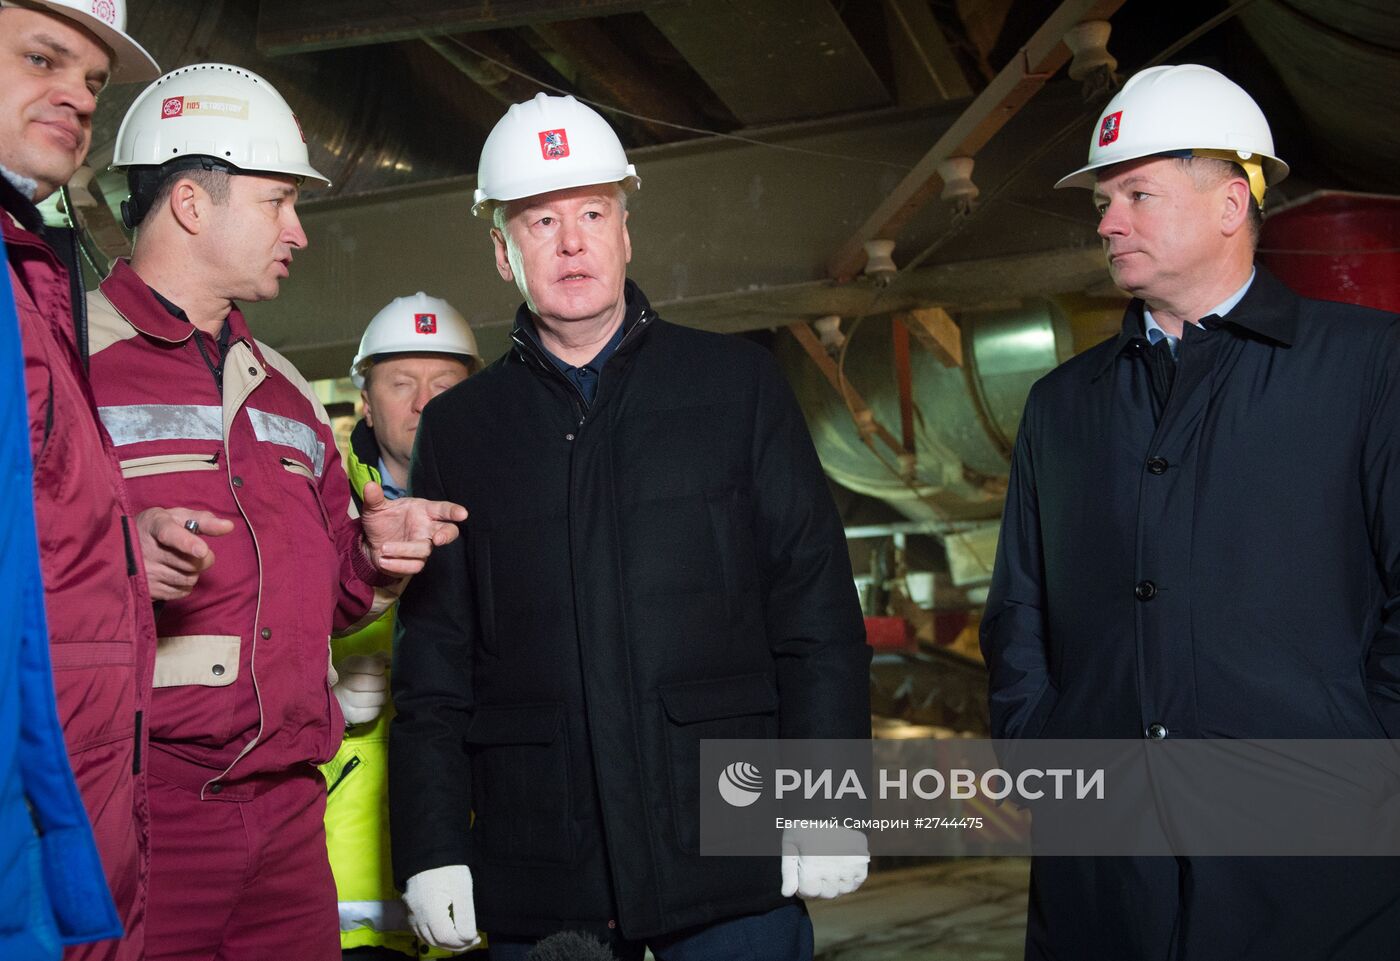 Мэр Москвы С.Собянин посетил строящуюся станцию метро "Фонвизинскую"